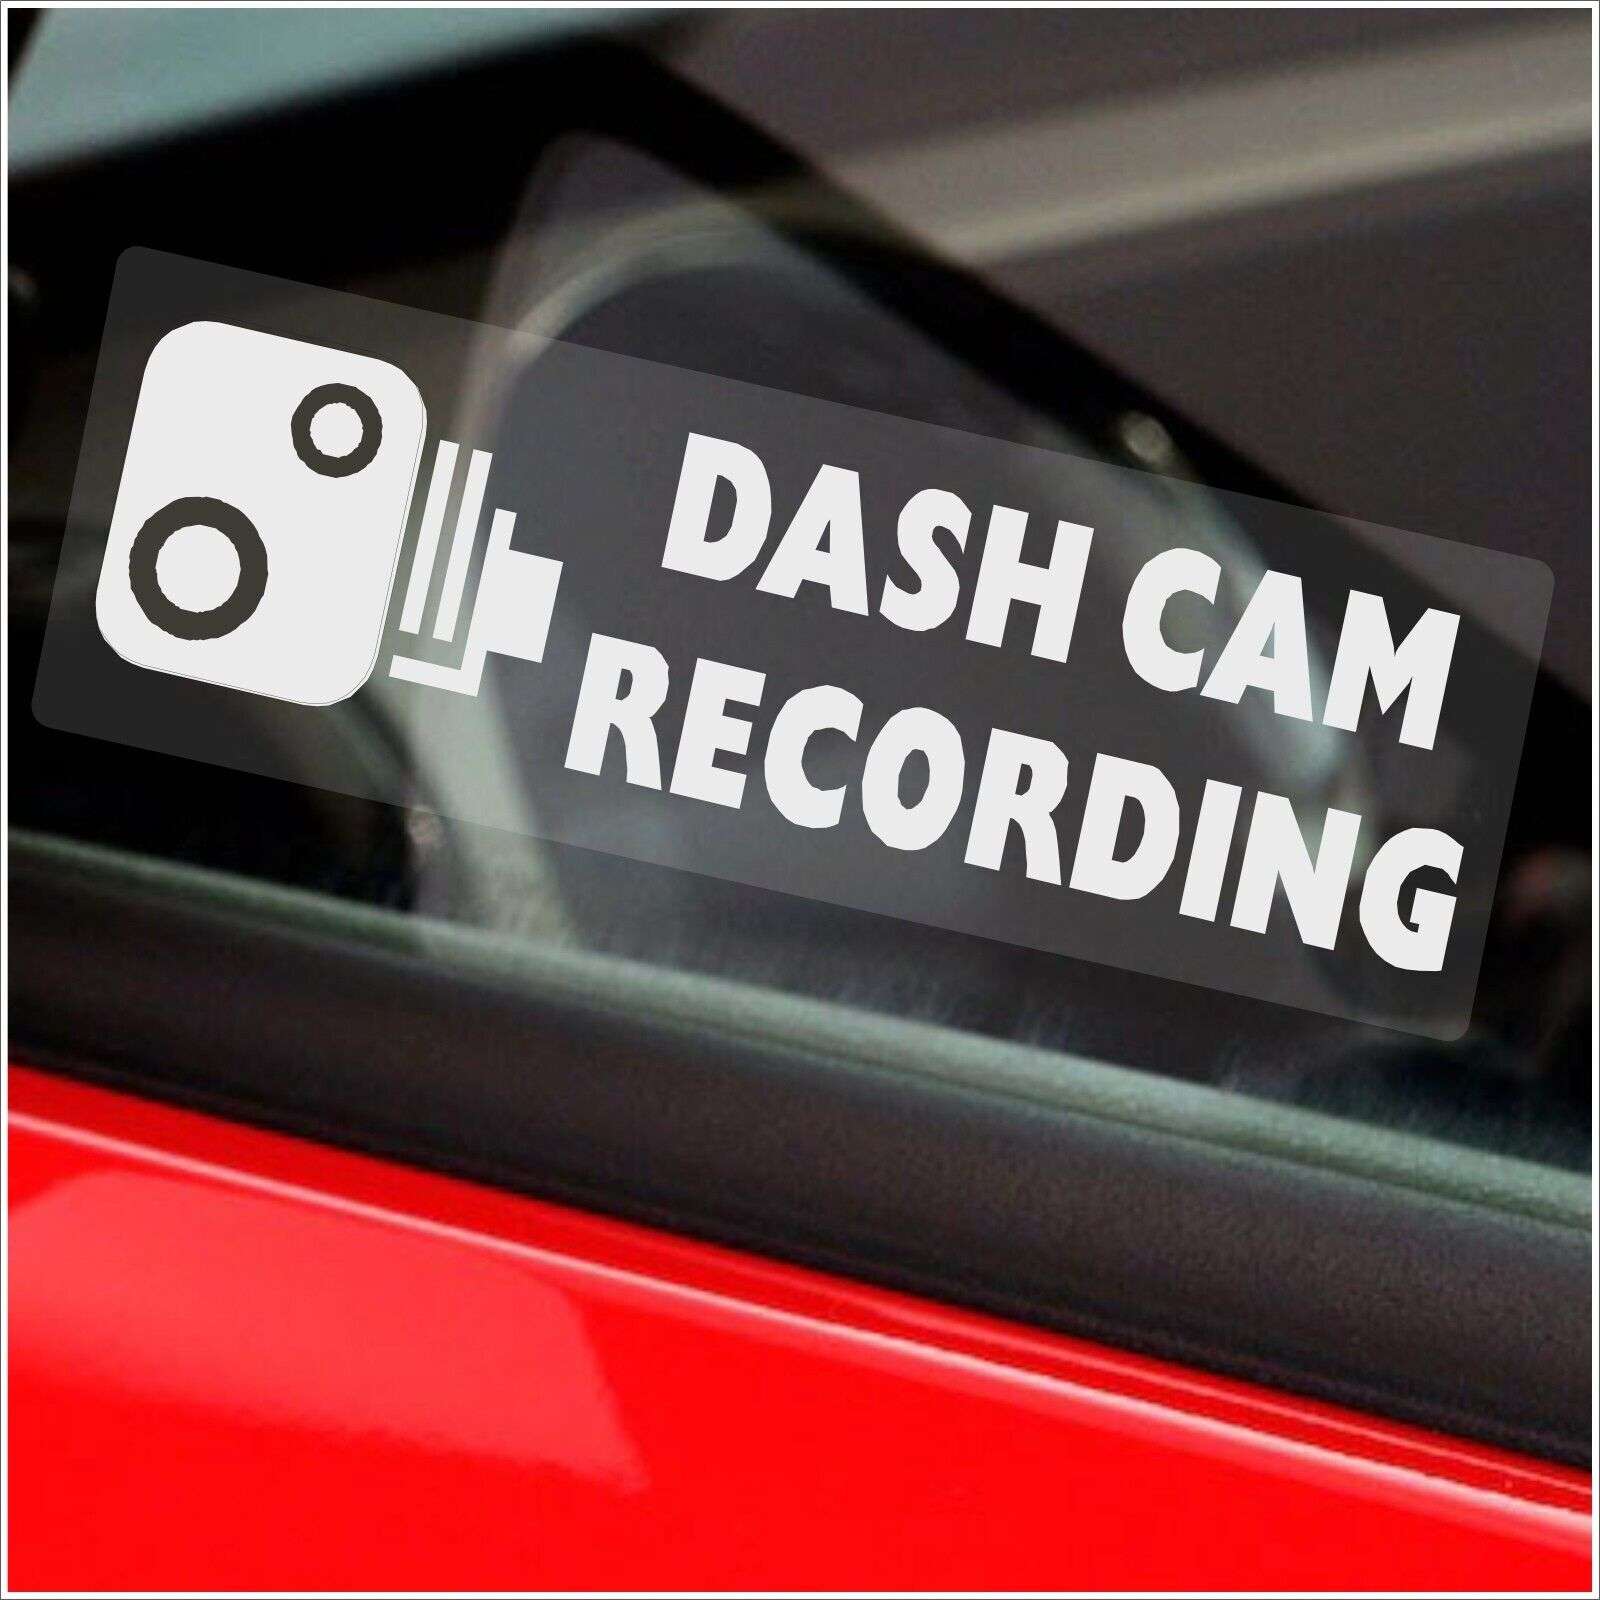 Autosticker Dash Cam Recording weiß - 76x25mm - Fensterinnenseite